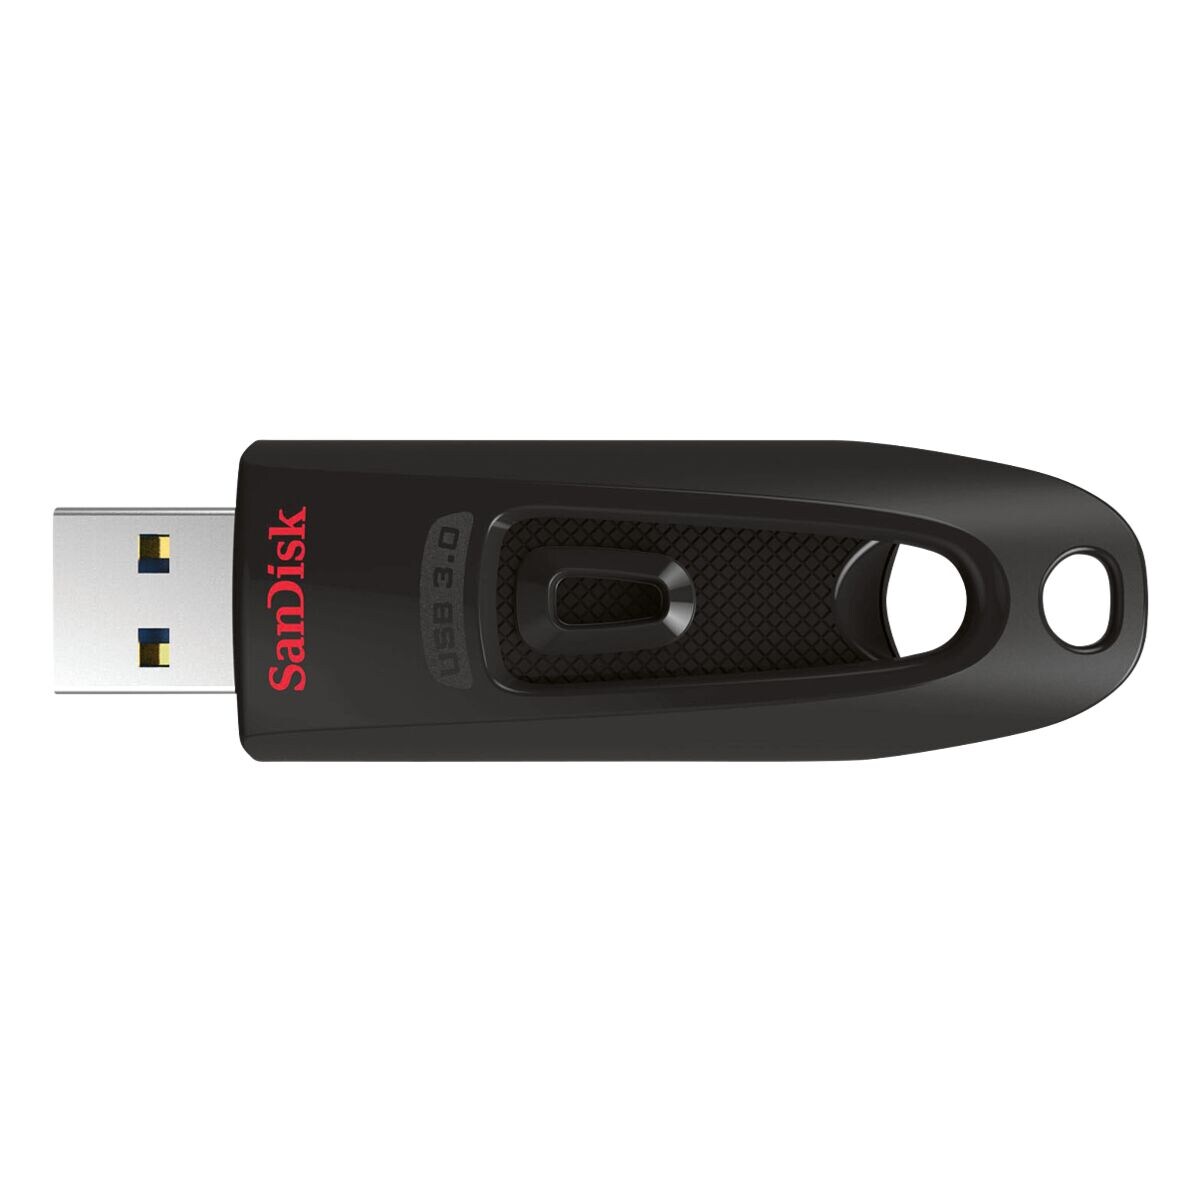 USB-stick 32 GB SanDisk Ultra  USB 3.0